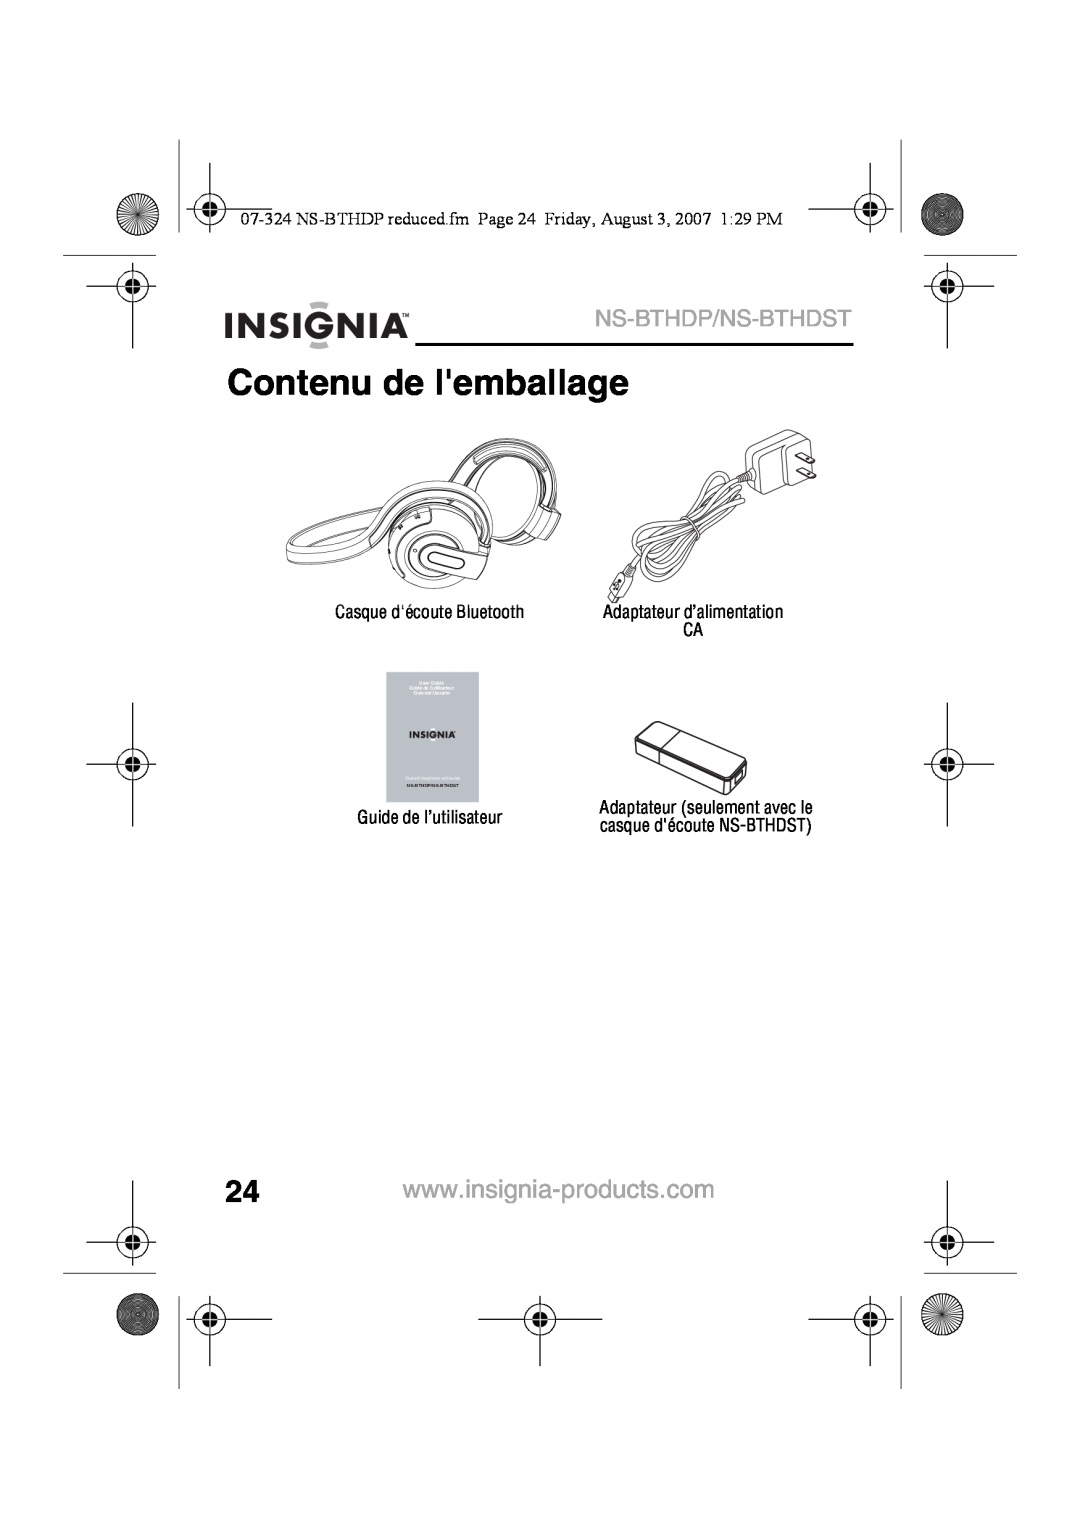 Insignia NS-BTHDST manual Contenu de lemballage, Ns-Bthdp/Ns-Bthdst, Adaptateur d’alimentation, Guide de l’utilisateur 